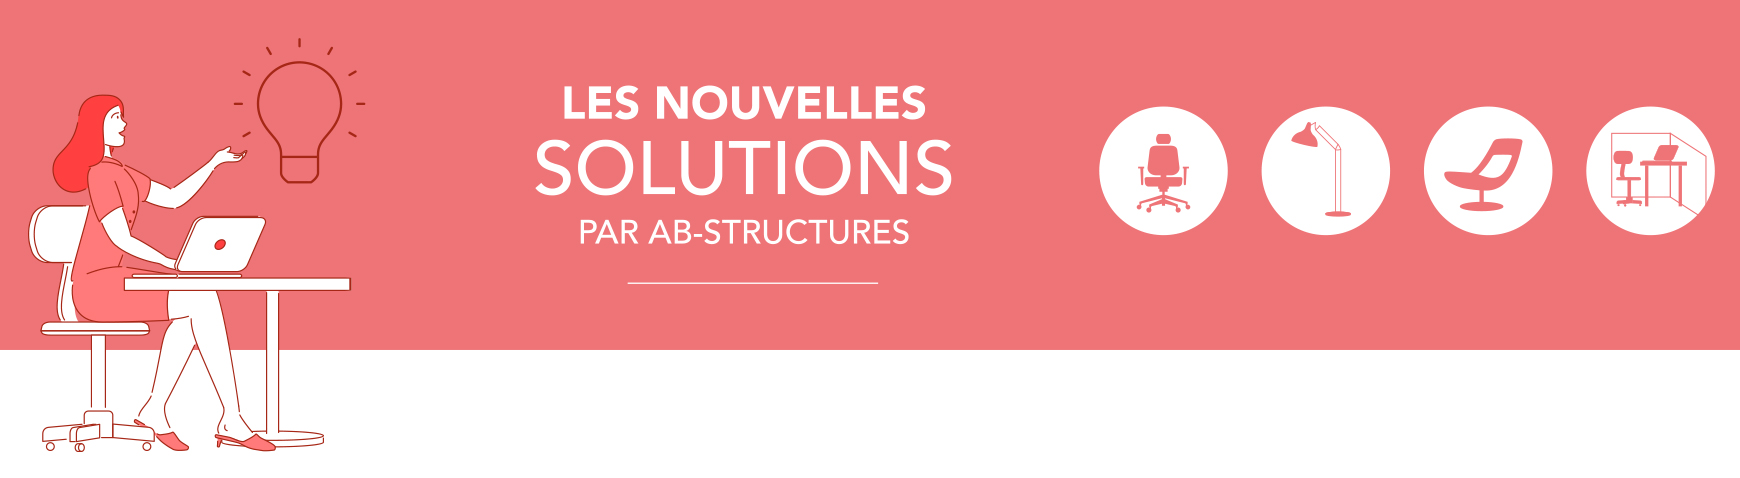 Les nouvelles solutions par AB Structures